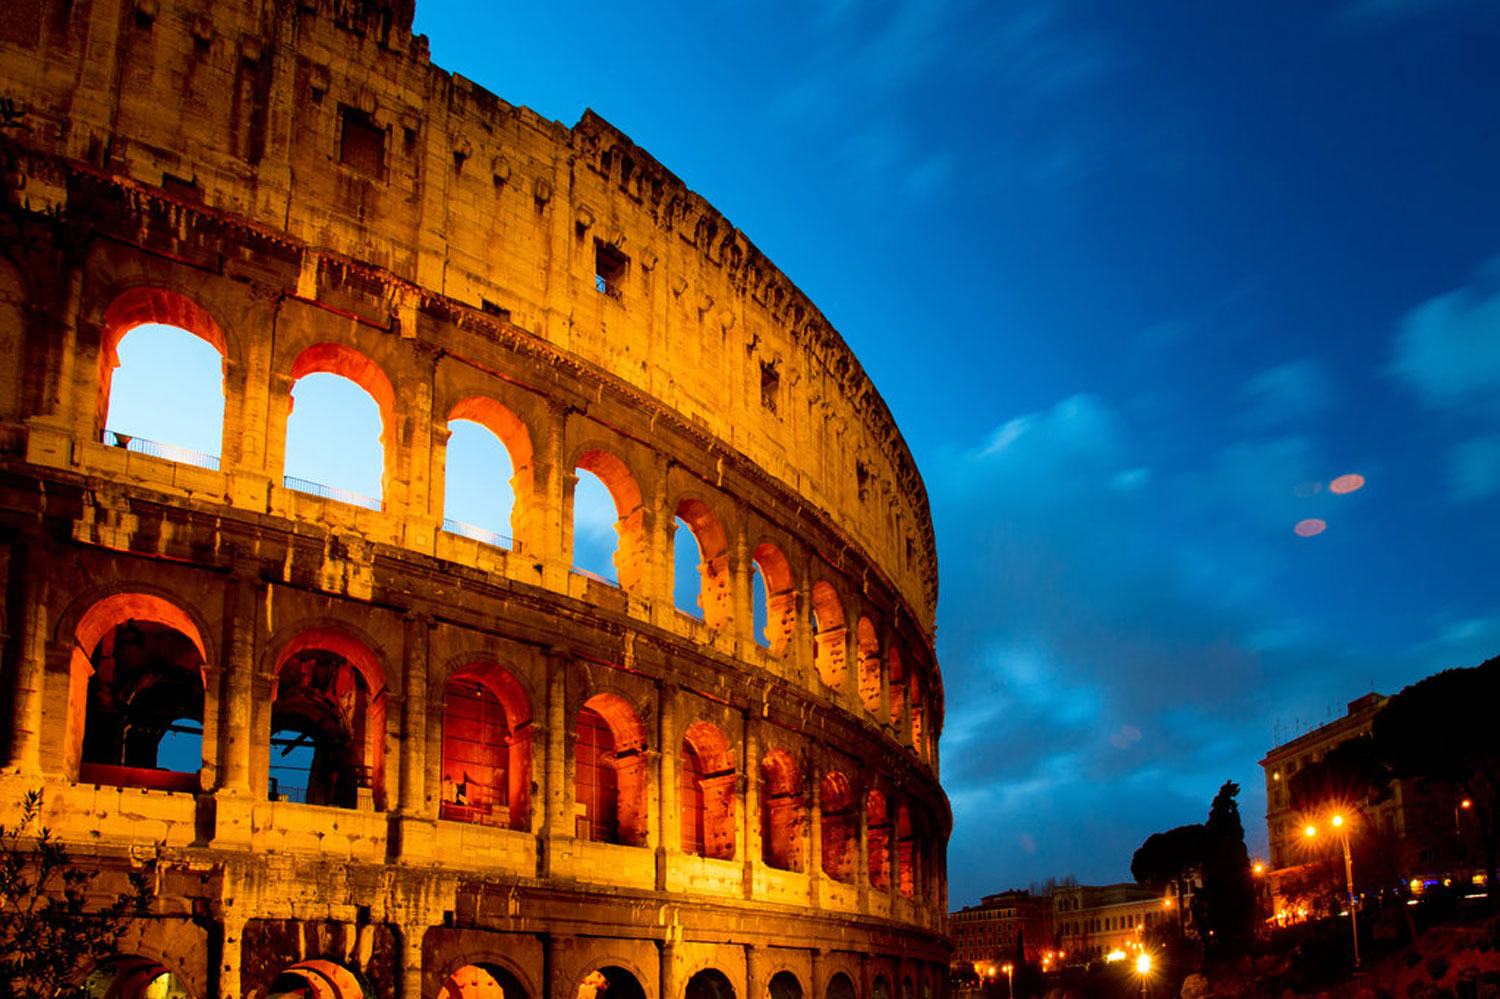 American Tourists’ Cute Night In Rome’s Colusseum Ends In $1,125 Fine